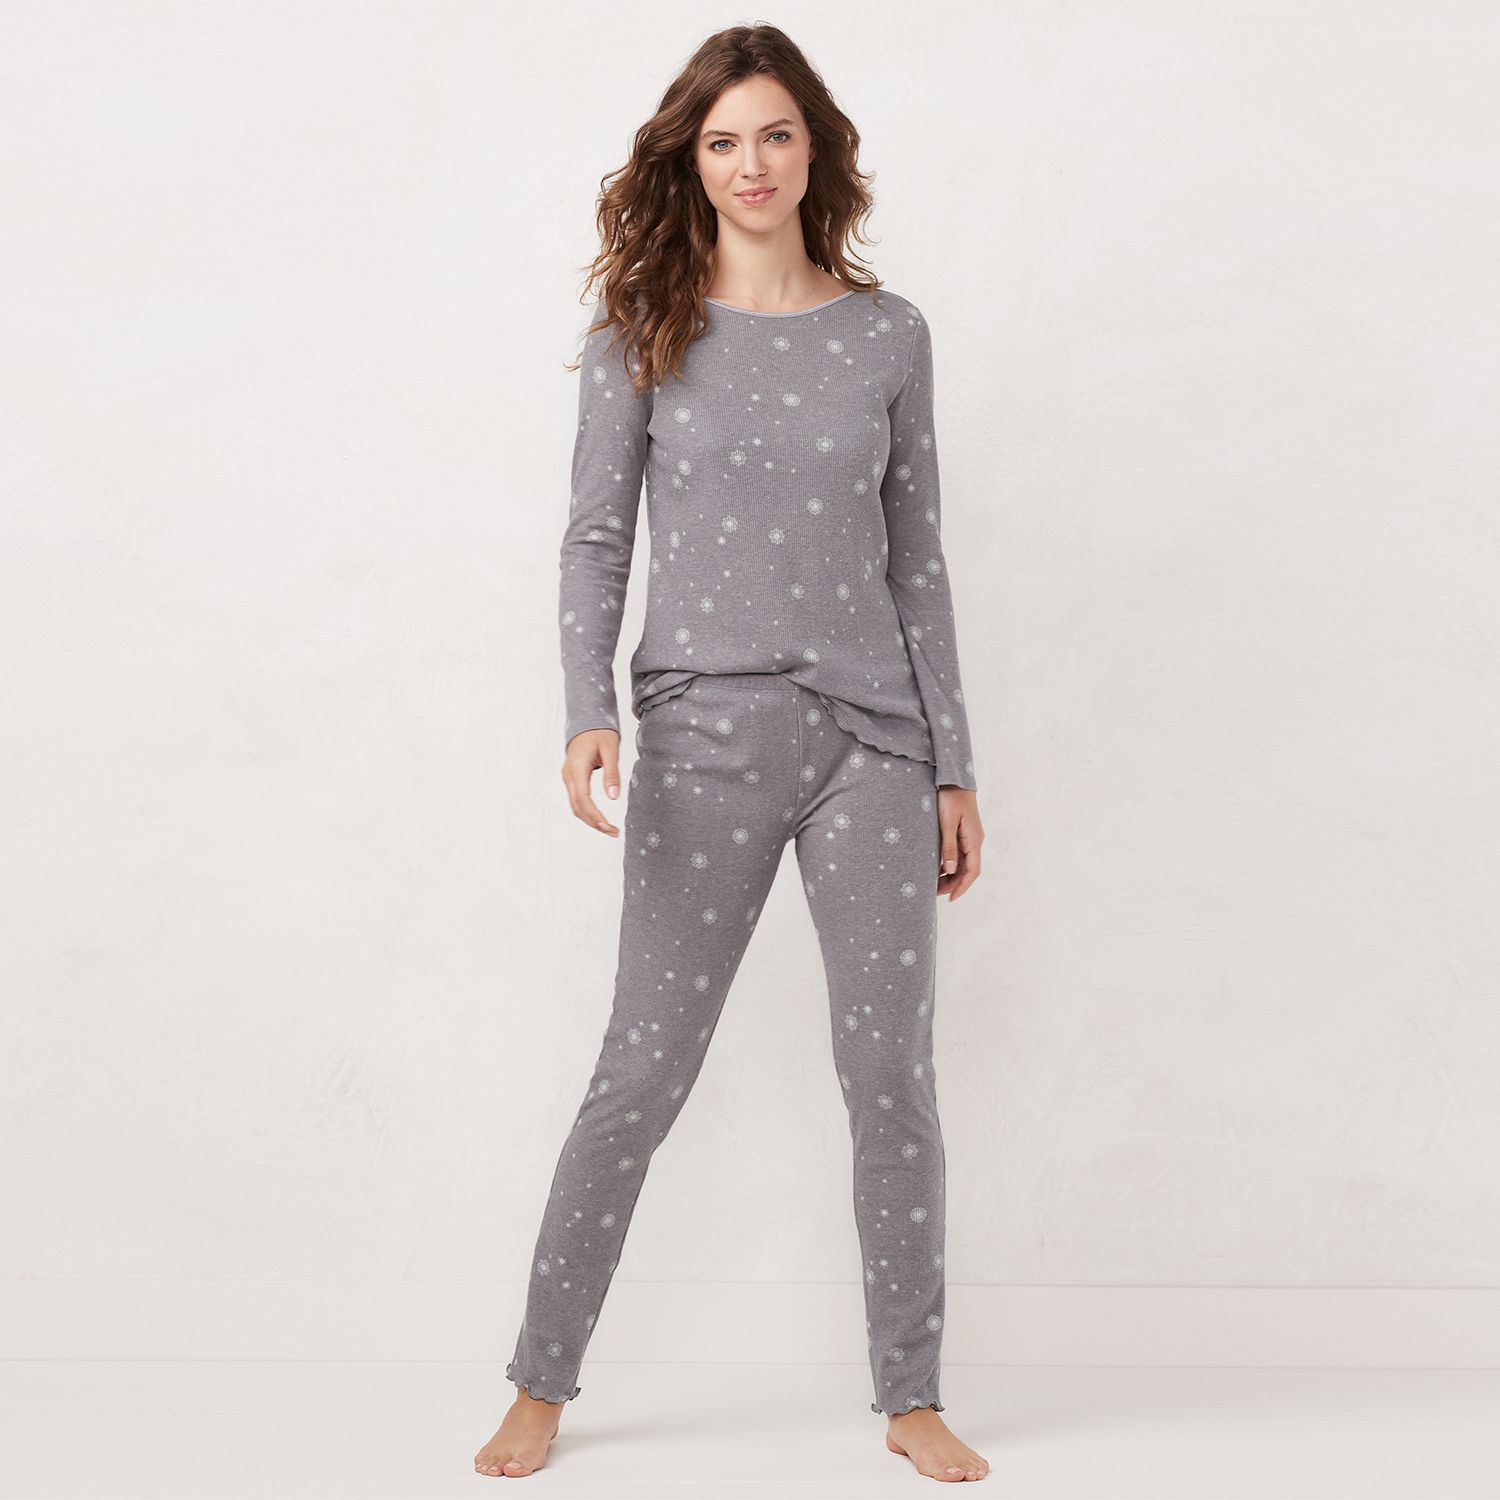 thermal pajamas